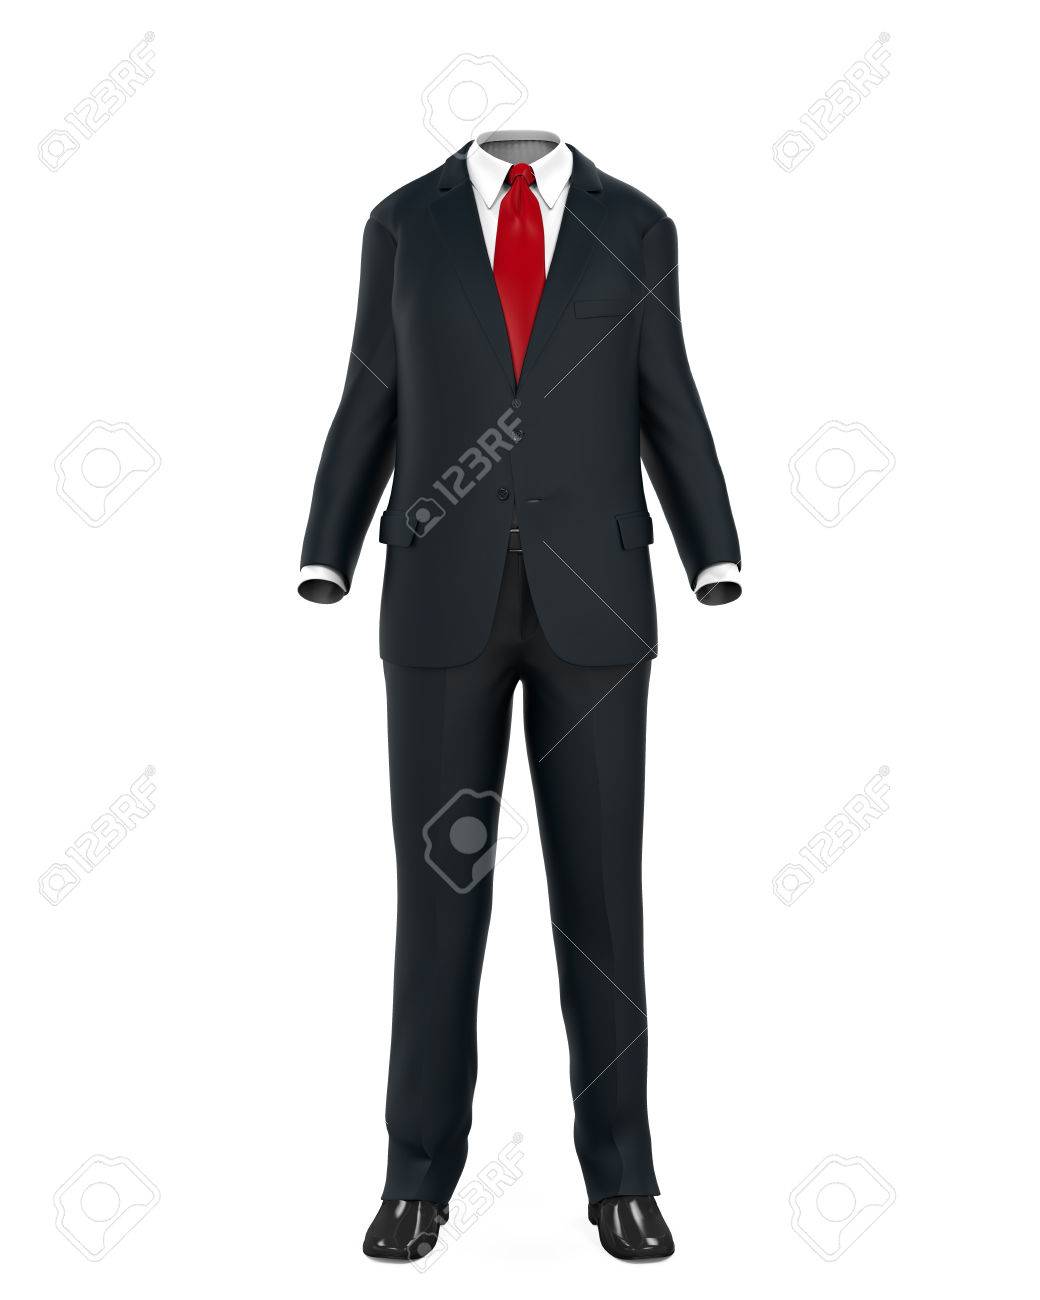 37586370-empty-suit-figure.jpg